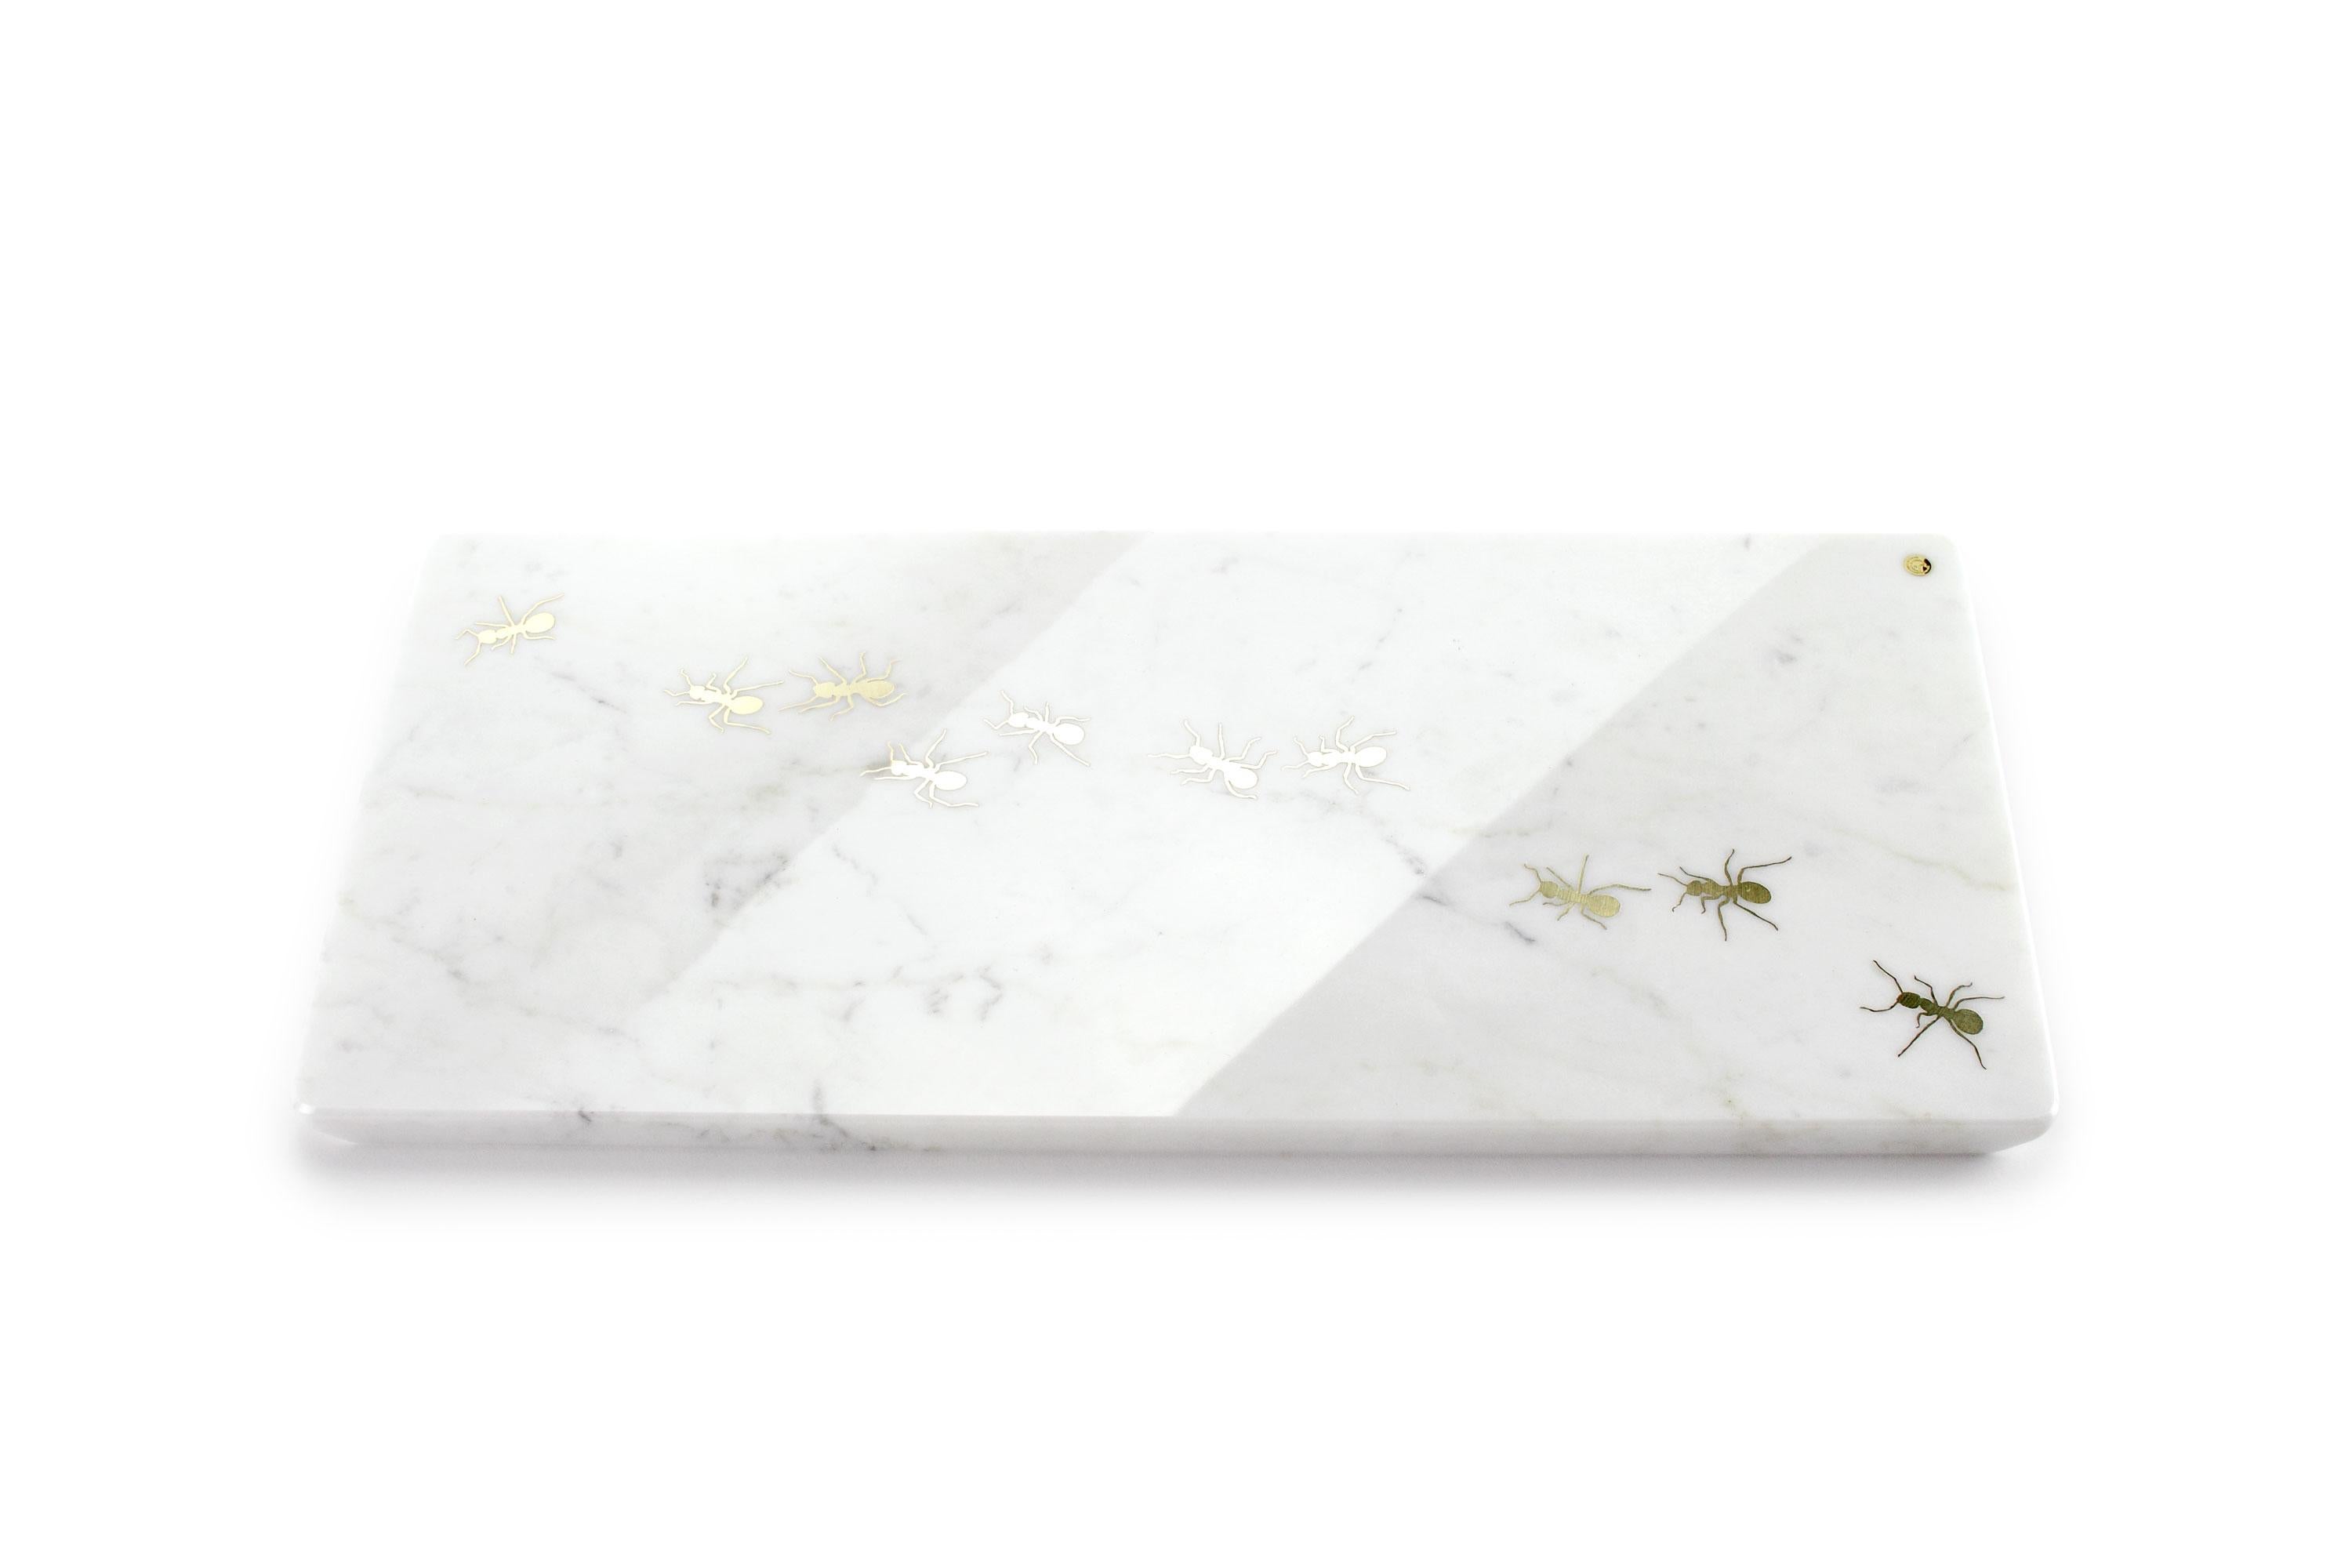 Centre de table / assiette de service en marbre blanc de Carrare avec incrustation de laiton poli.

Dimensions : Bigli - L 45 L 20,5 H 1,5 cm
Également disponible : Moyen - L 45 L 12 H 1,5 cm ou Petit - L 26 L 11 H 1,5 cm

100 % Fabriqué à la main